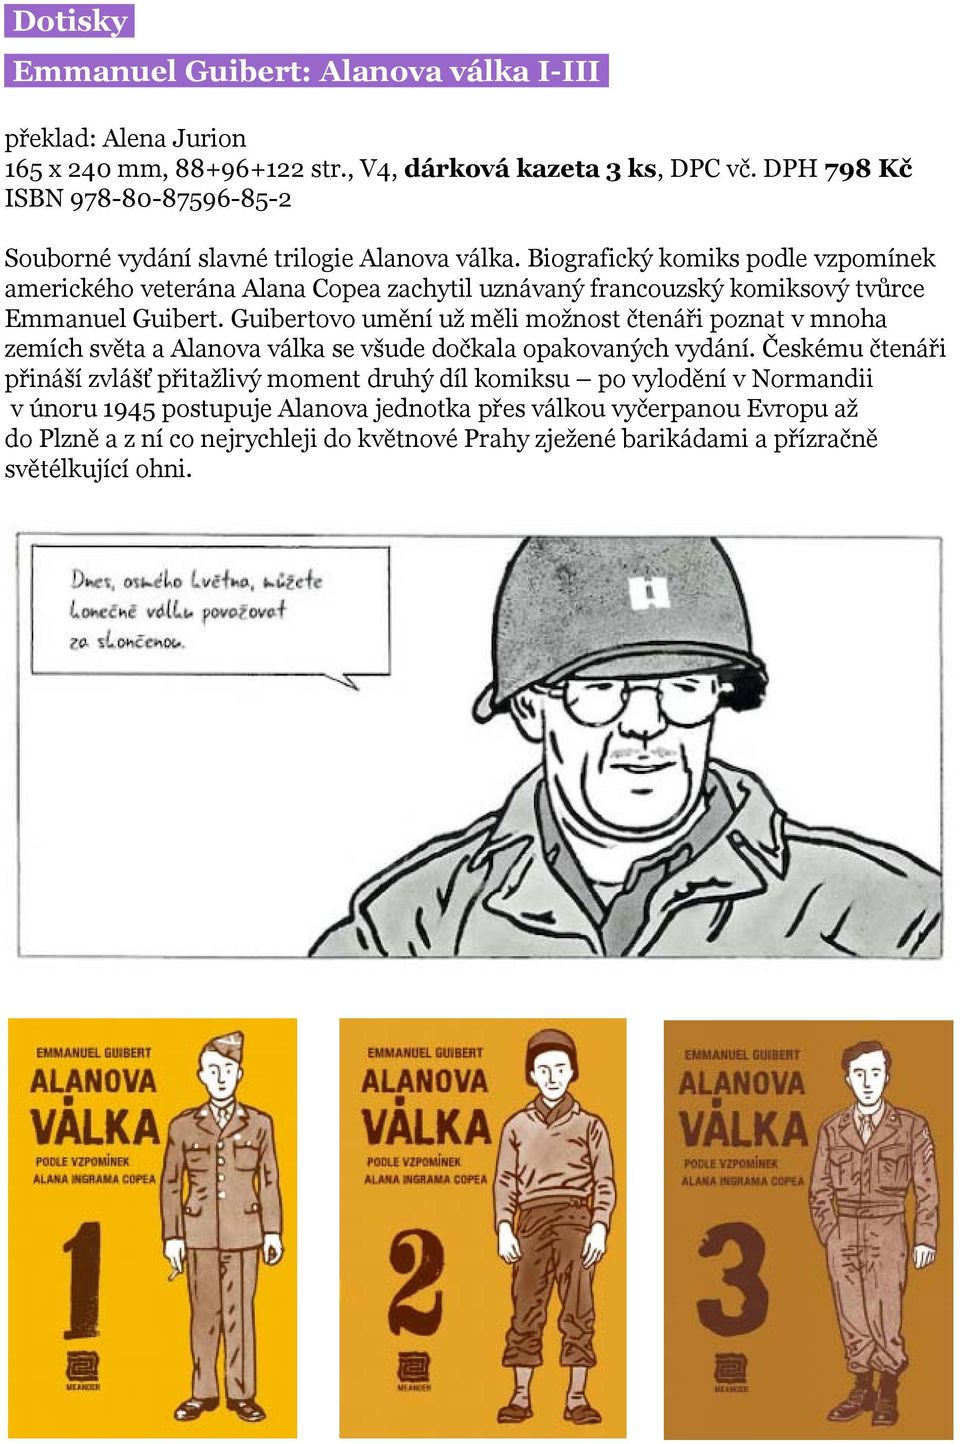 Biografický komiks podle vzpomínek amerického veterána Alana Copea zachytil uznávaný francouzský komiksový tvůrce Emmanuel Guibert.